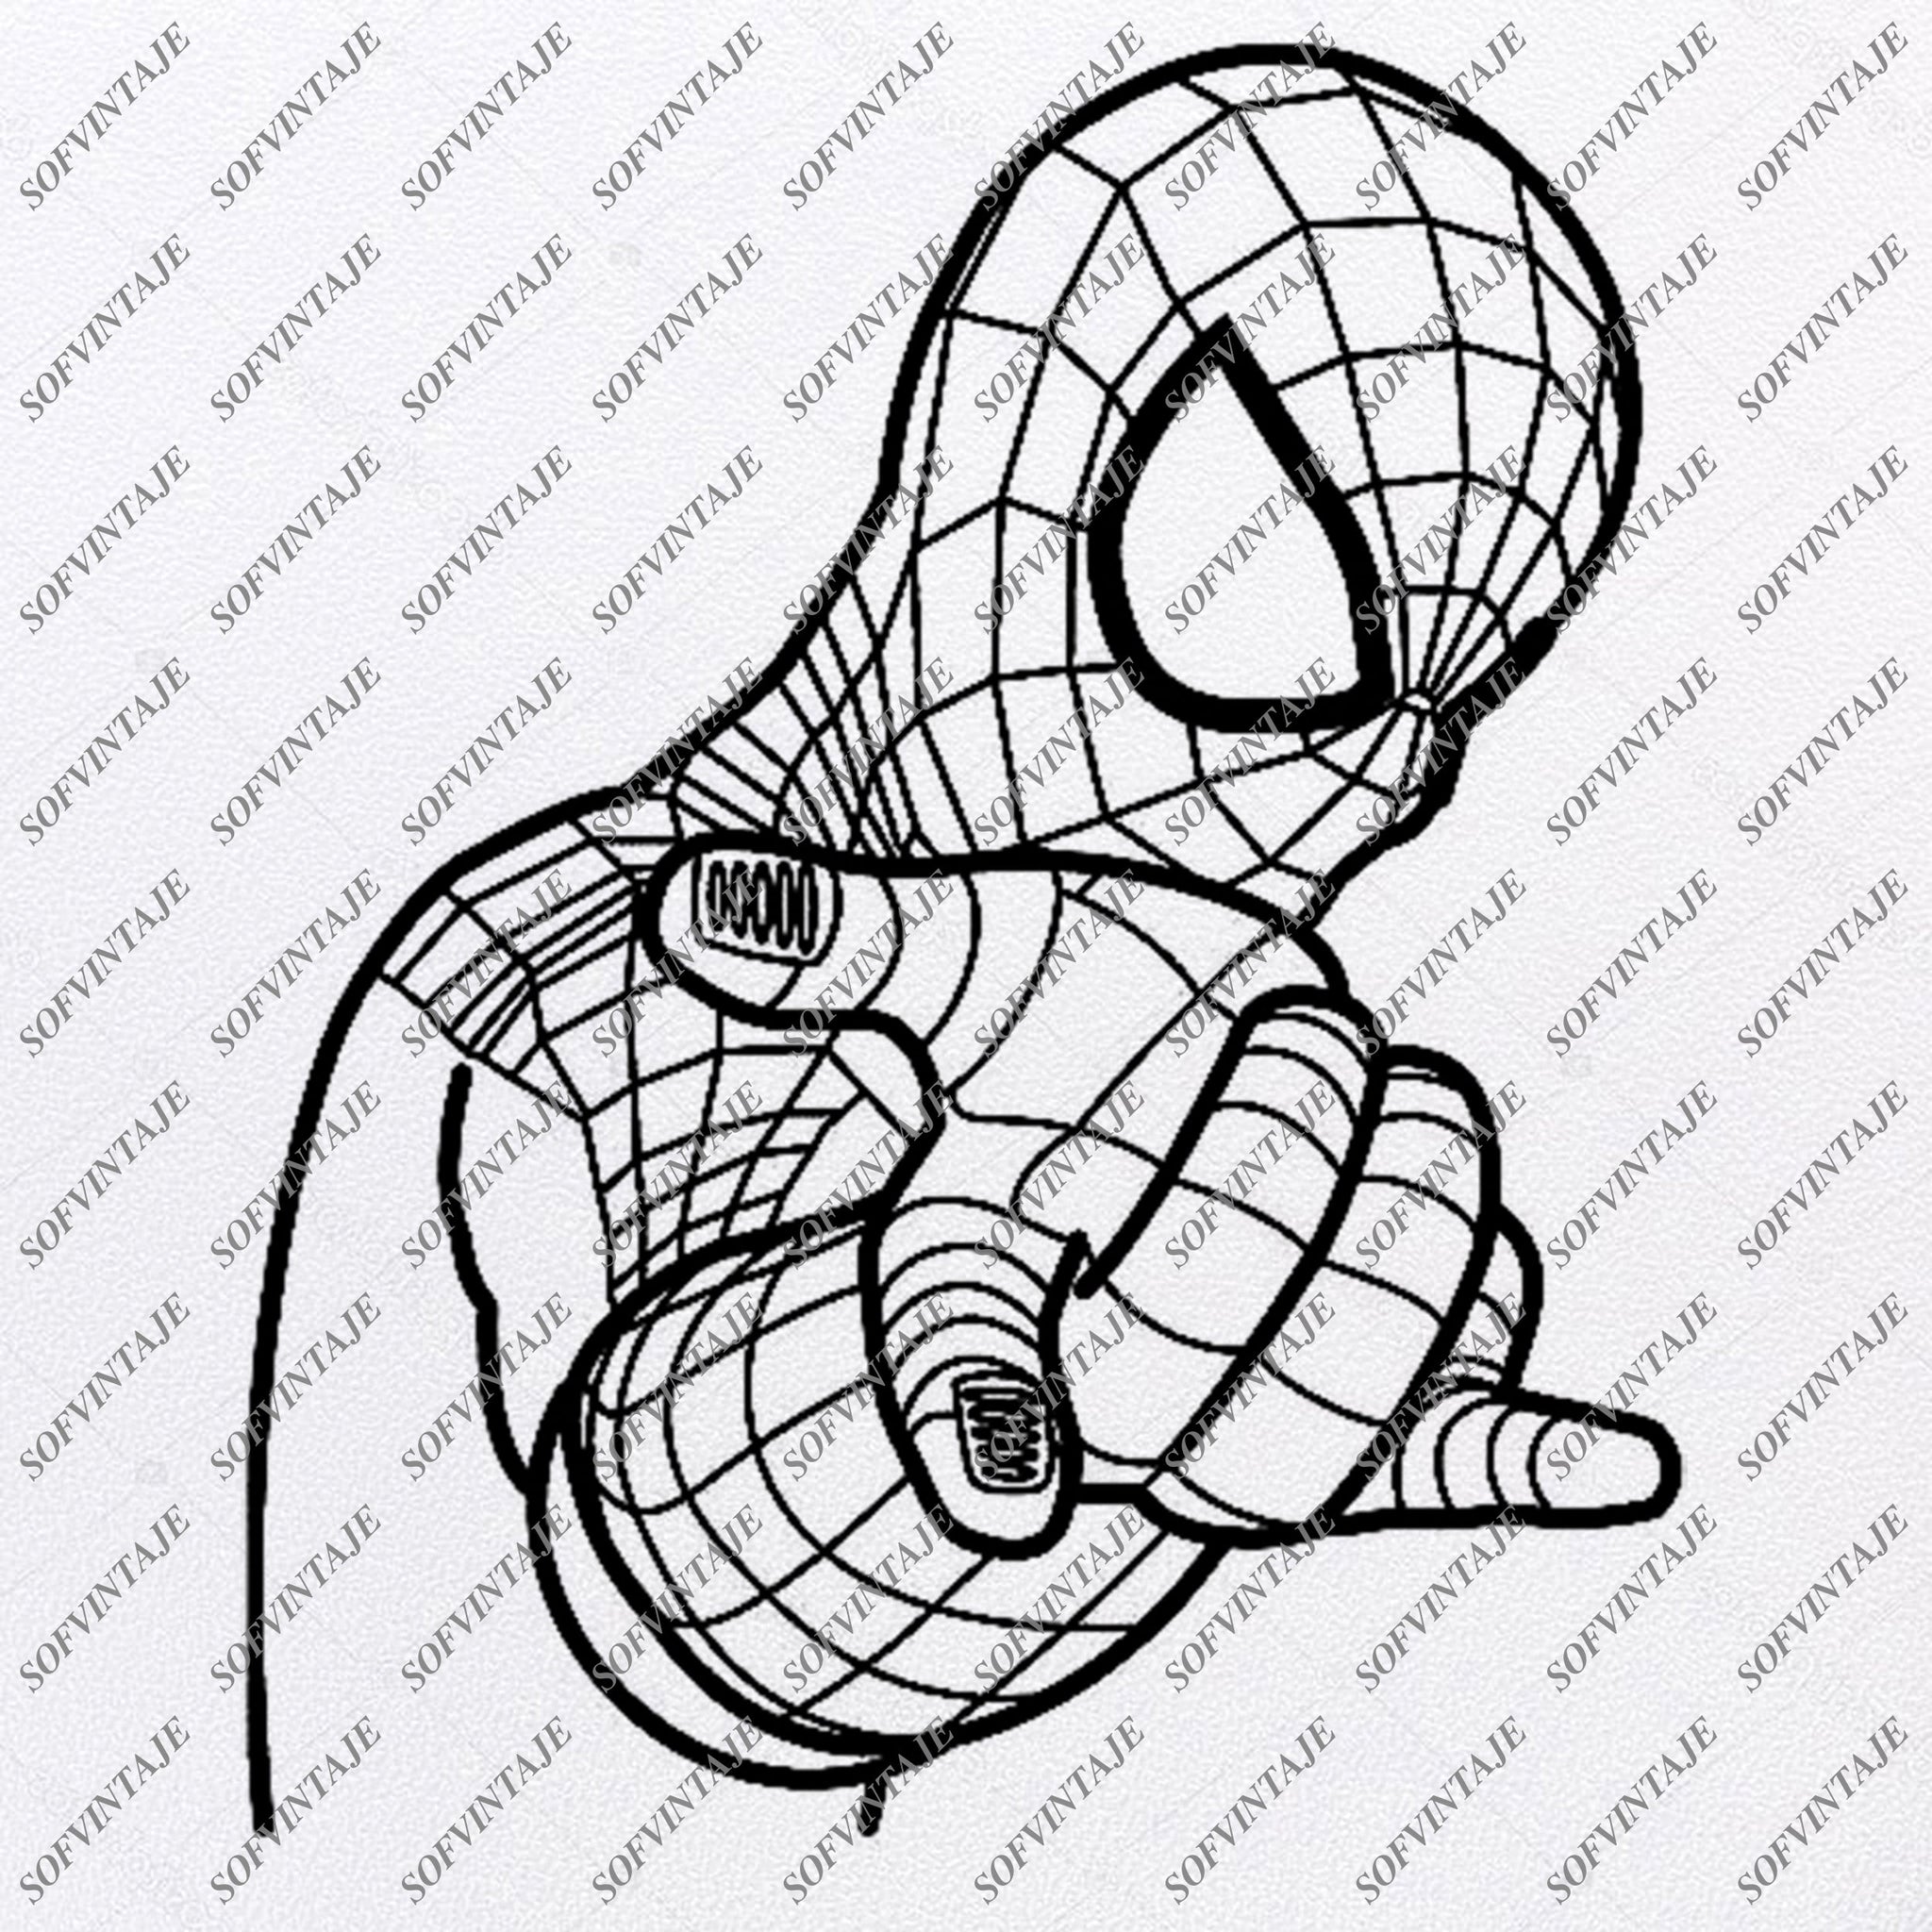 Download Spiderman Svg File-Spiderman Original Svg DesignTattoo Svg ...